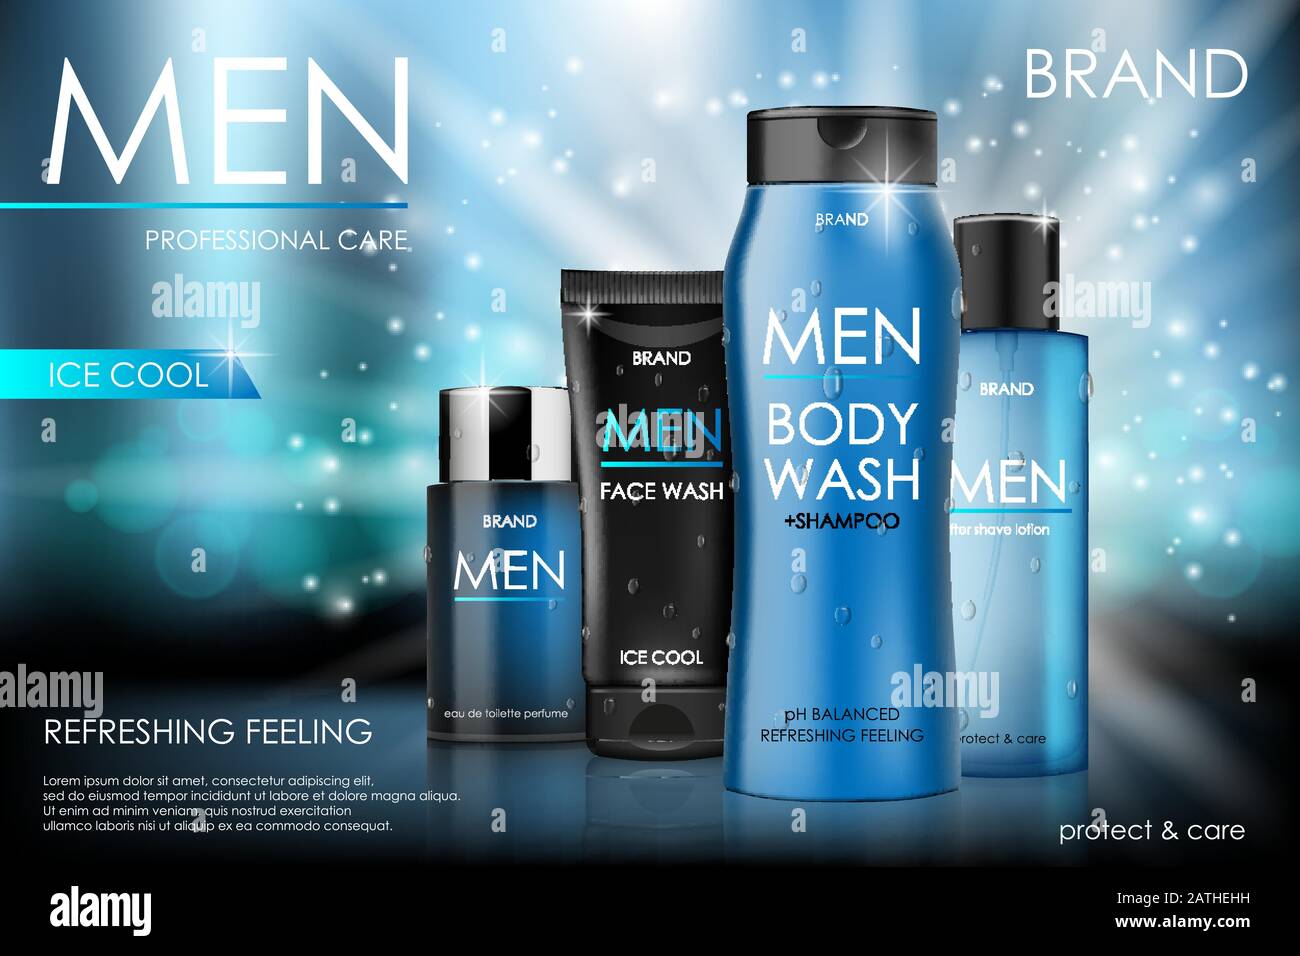 Magazine Ads For Men